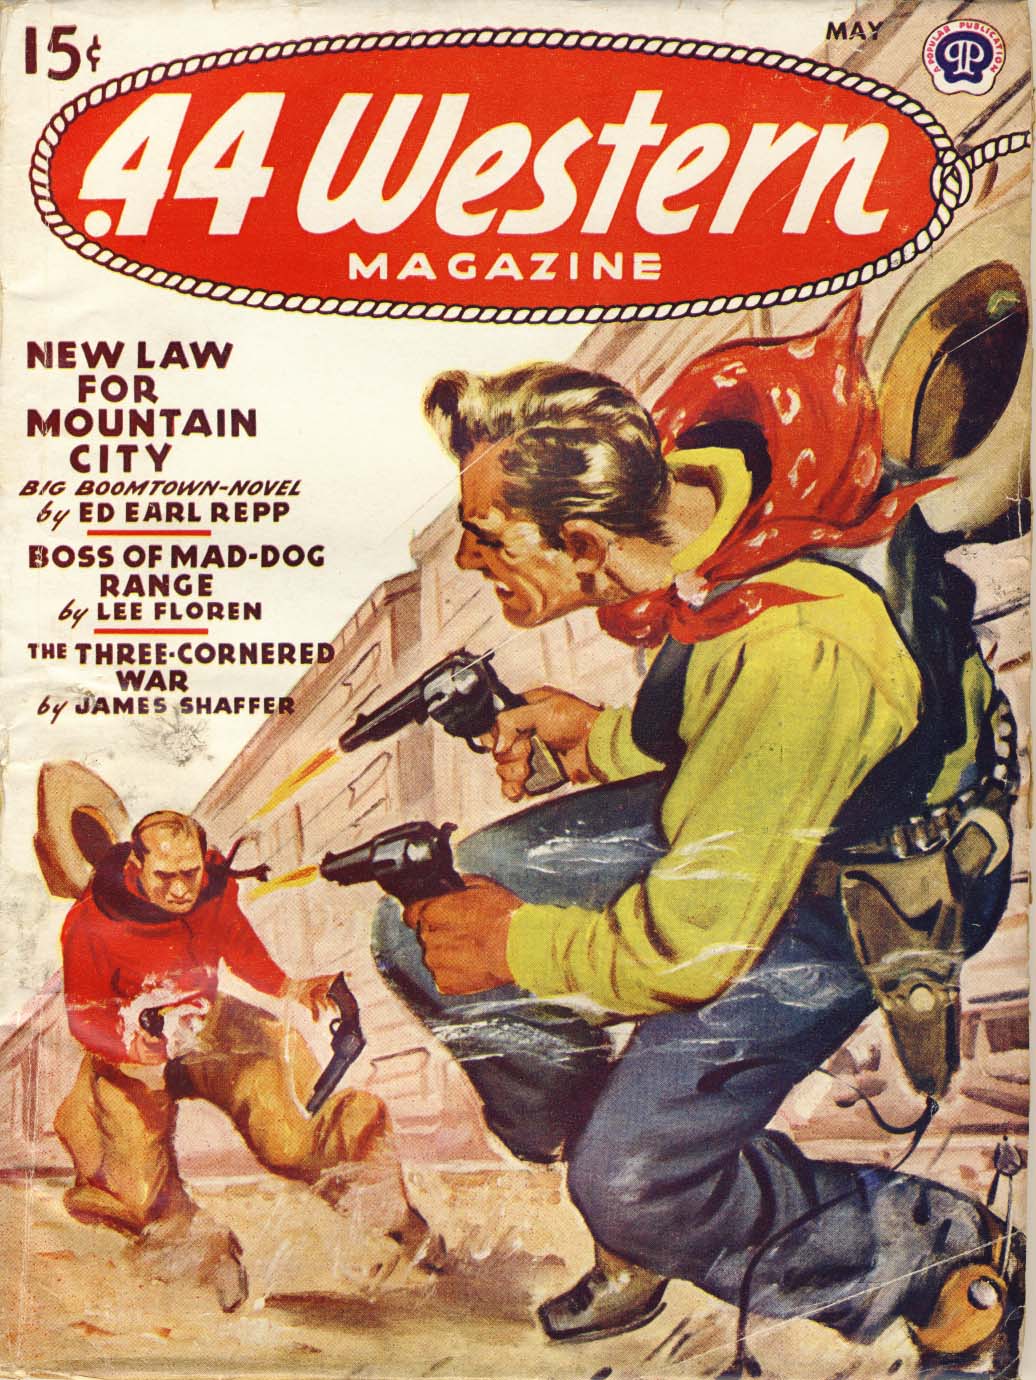 44 Western Magazine Magazine, v.14, n.3, May 1946 cover